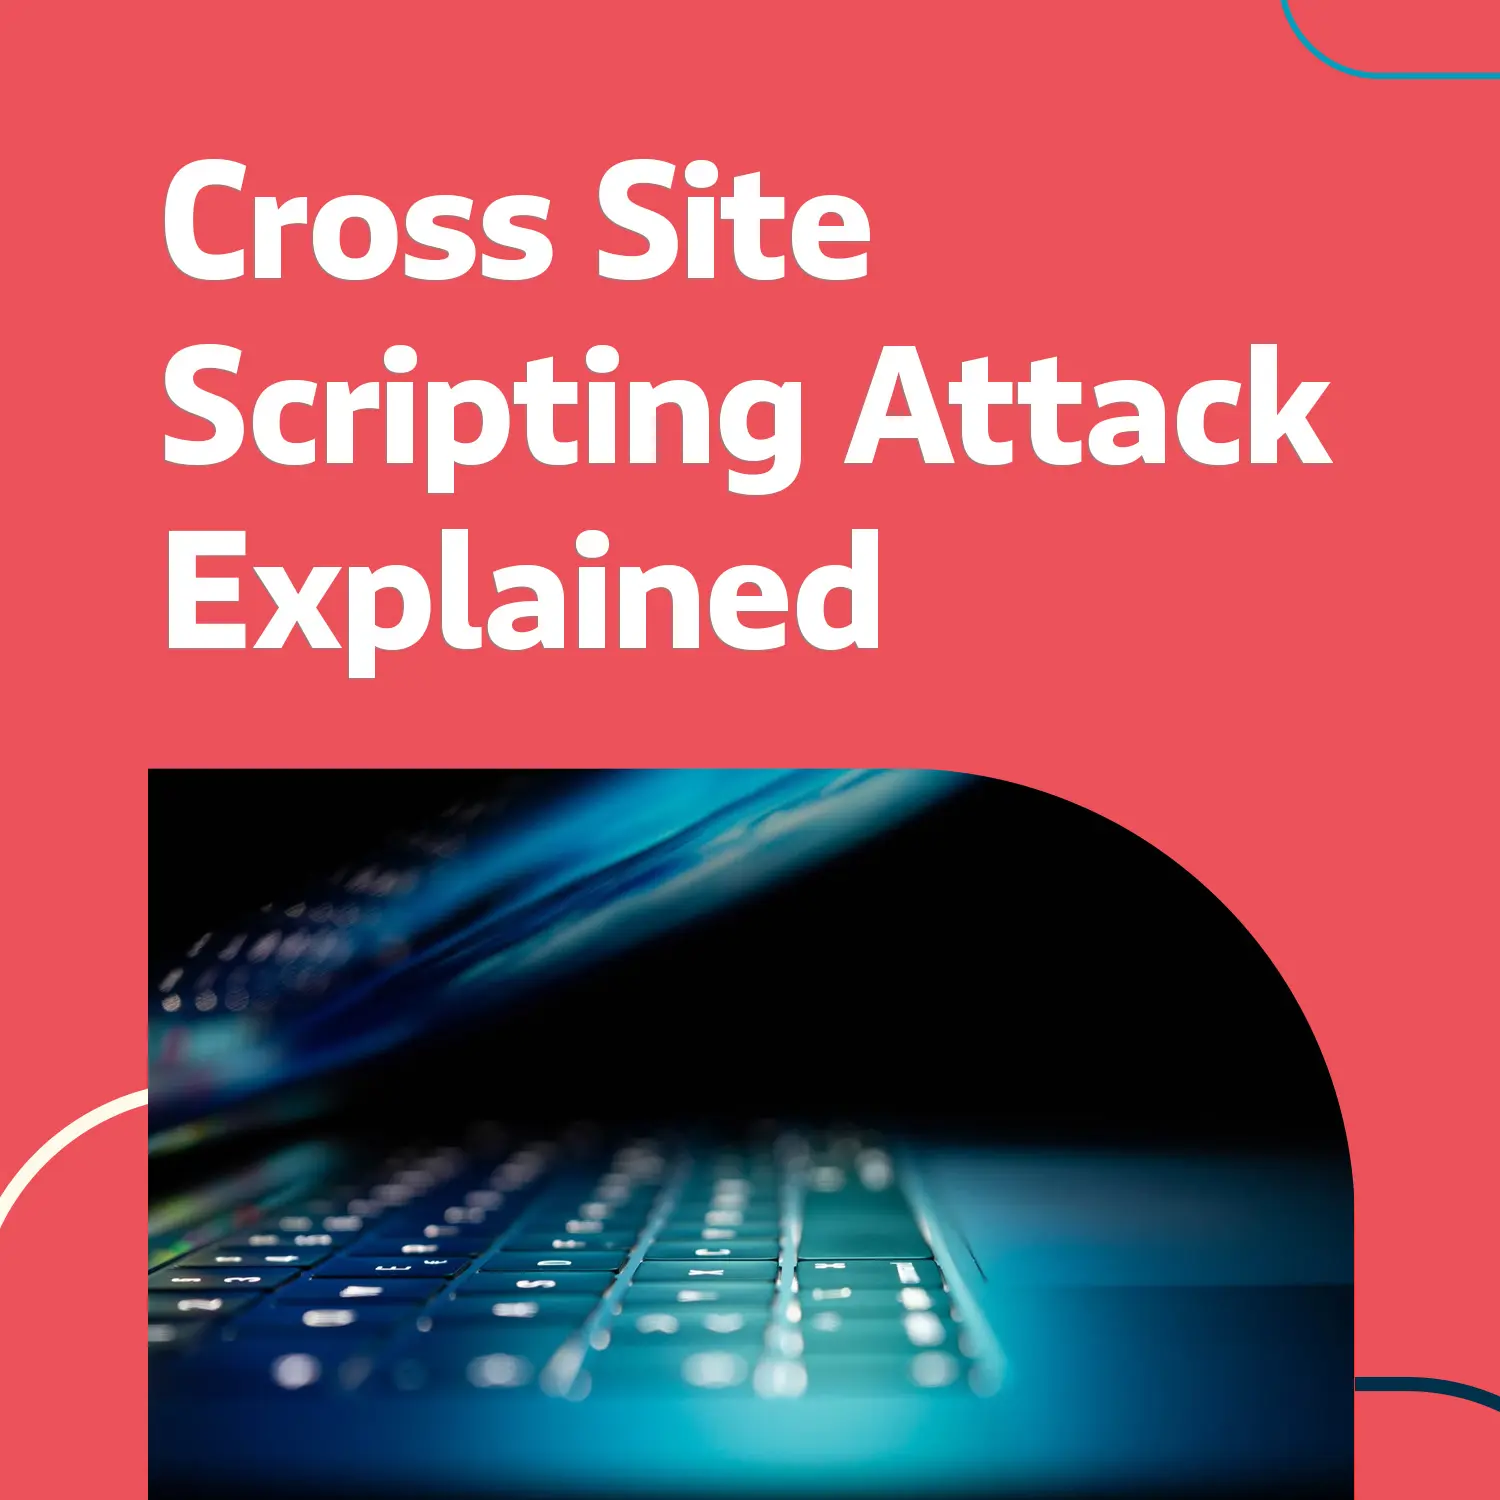 Cross Site Scripting Attacks